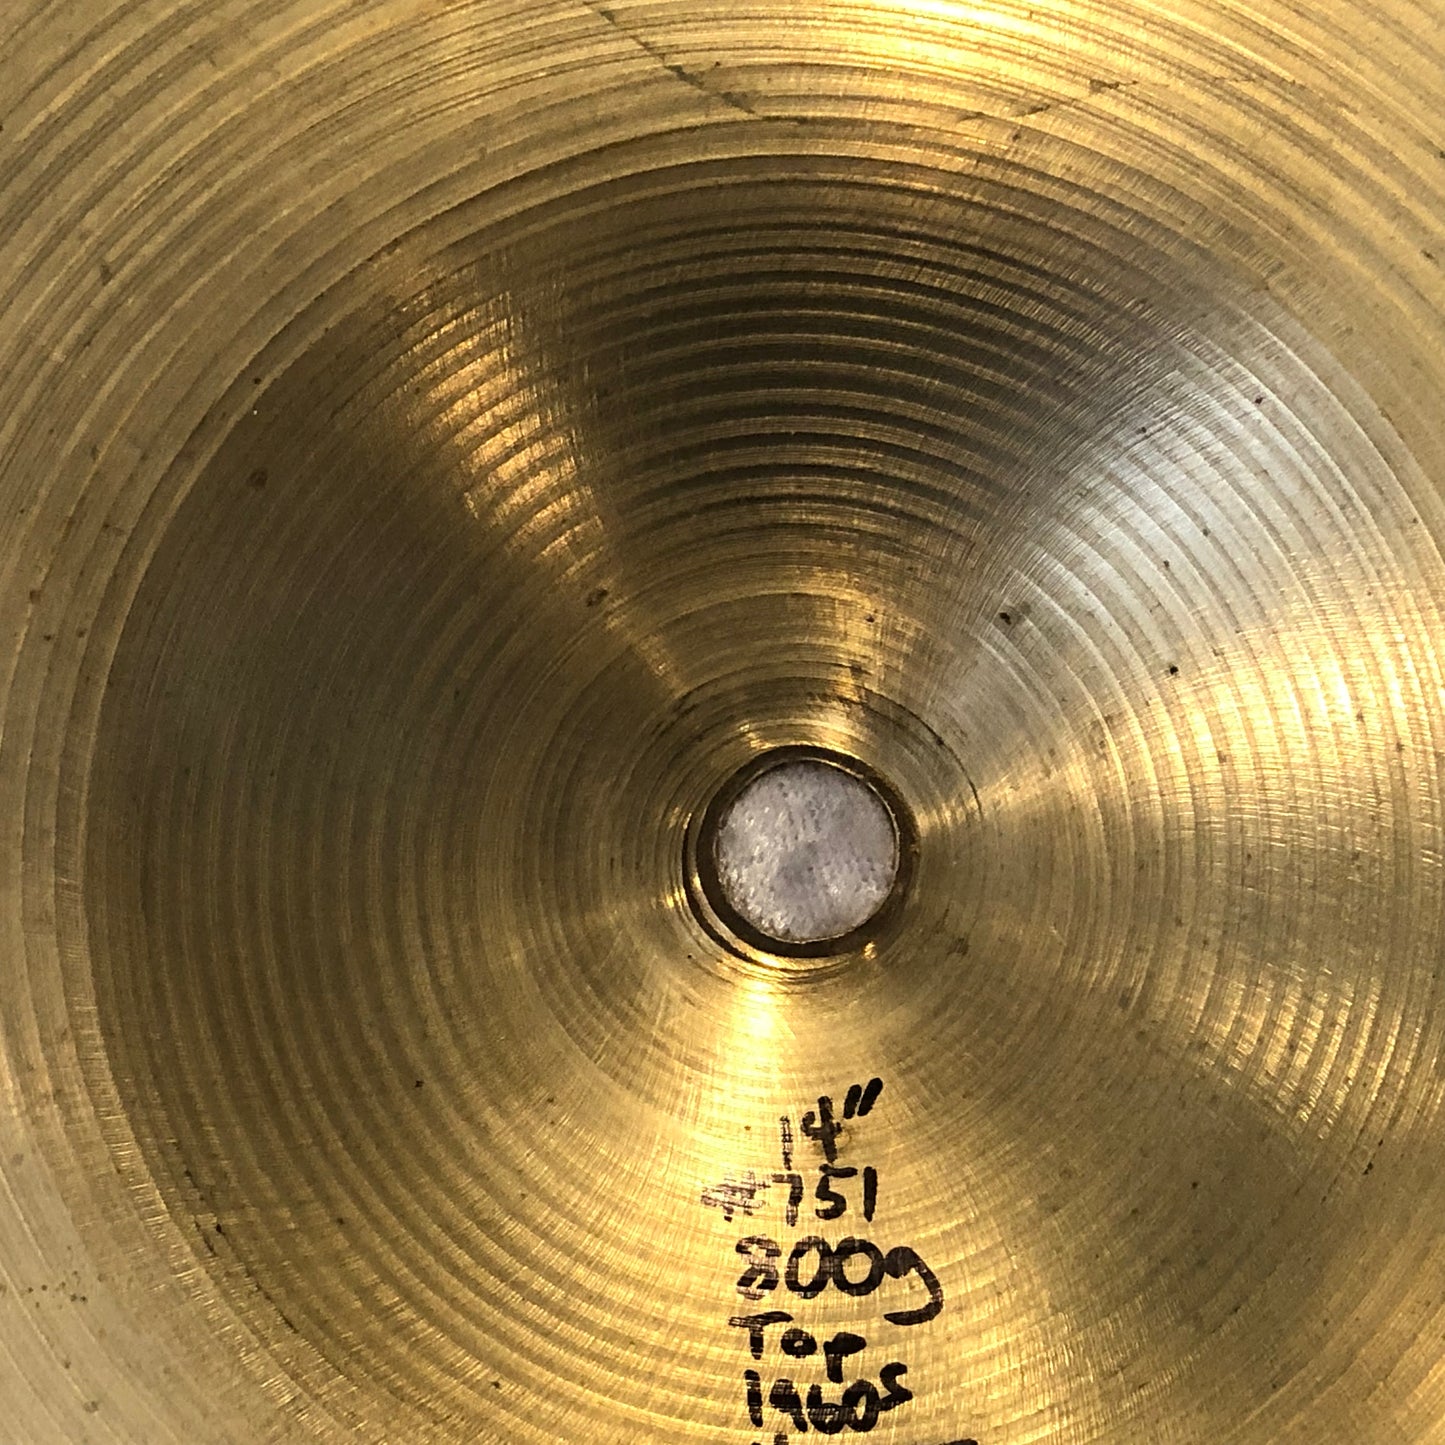 14" Zildjian A 1960s Hi-Hat Cymbal Set 800g/880g #751